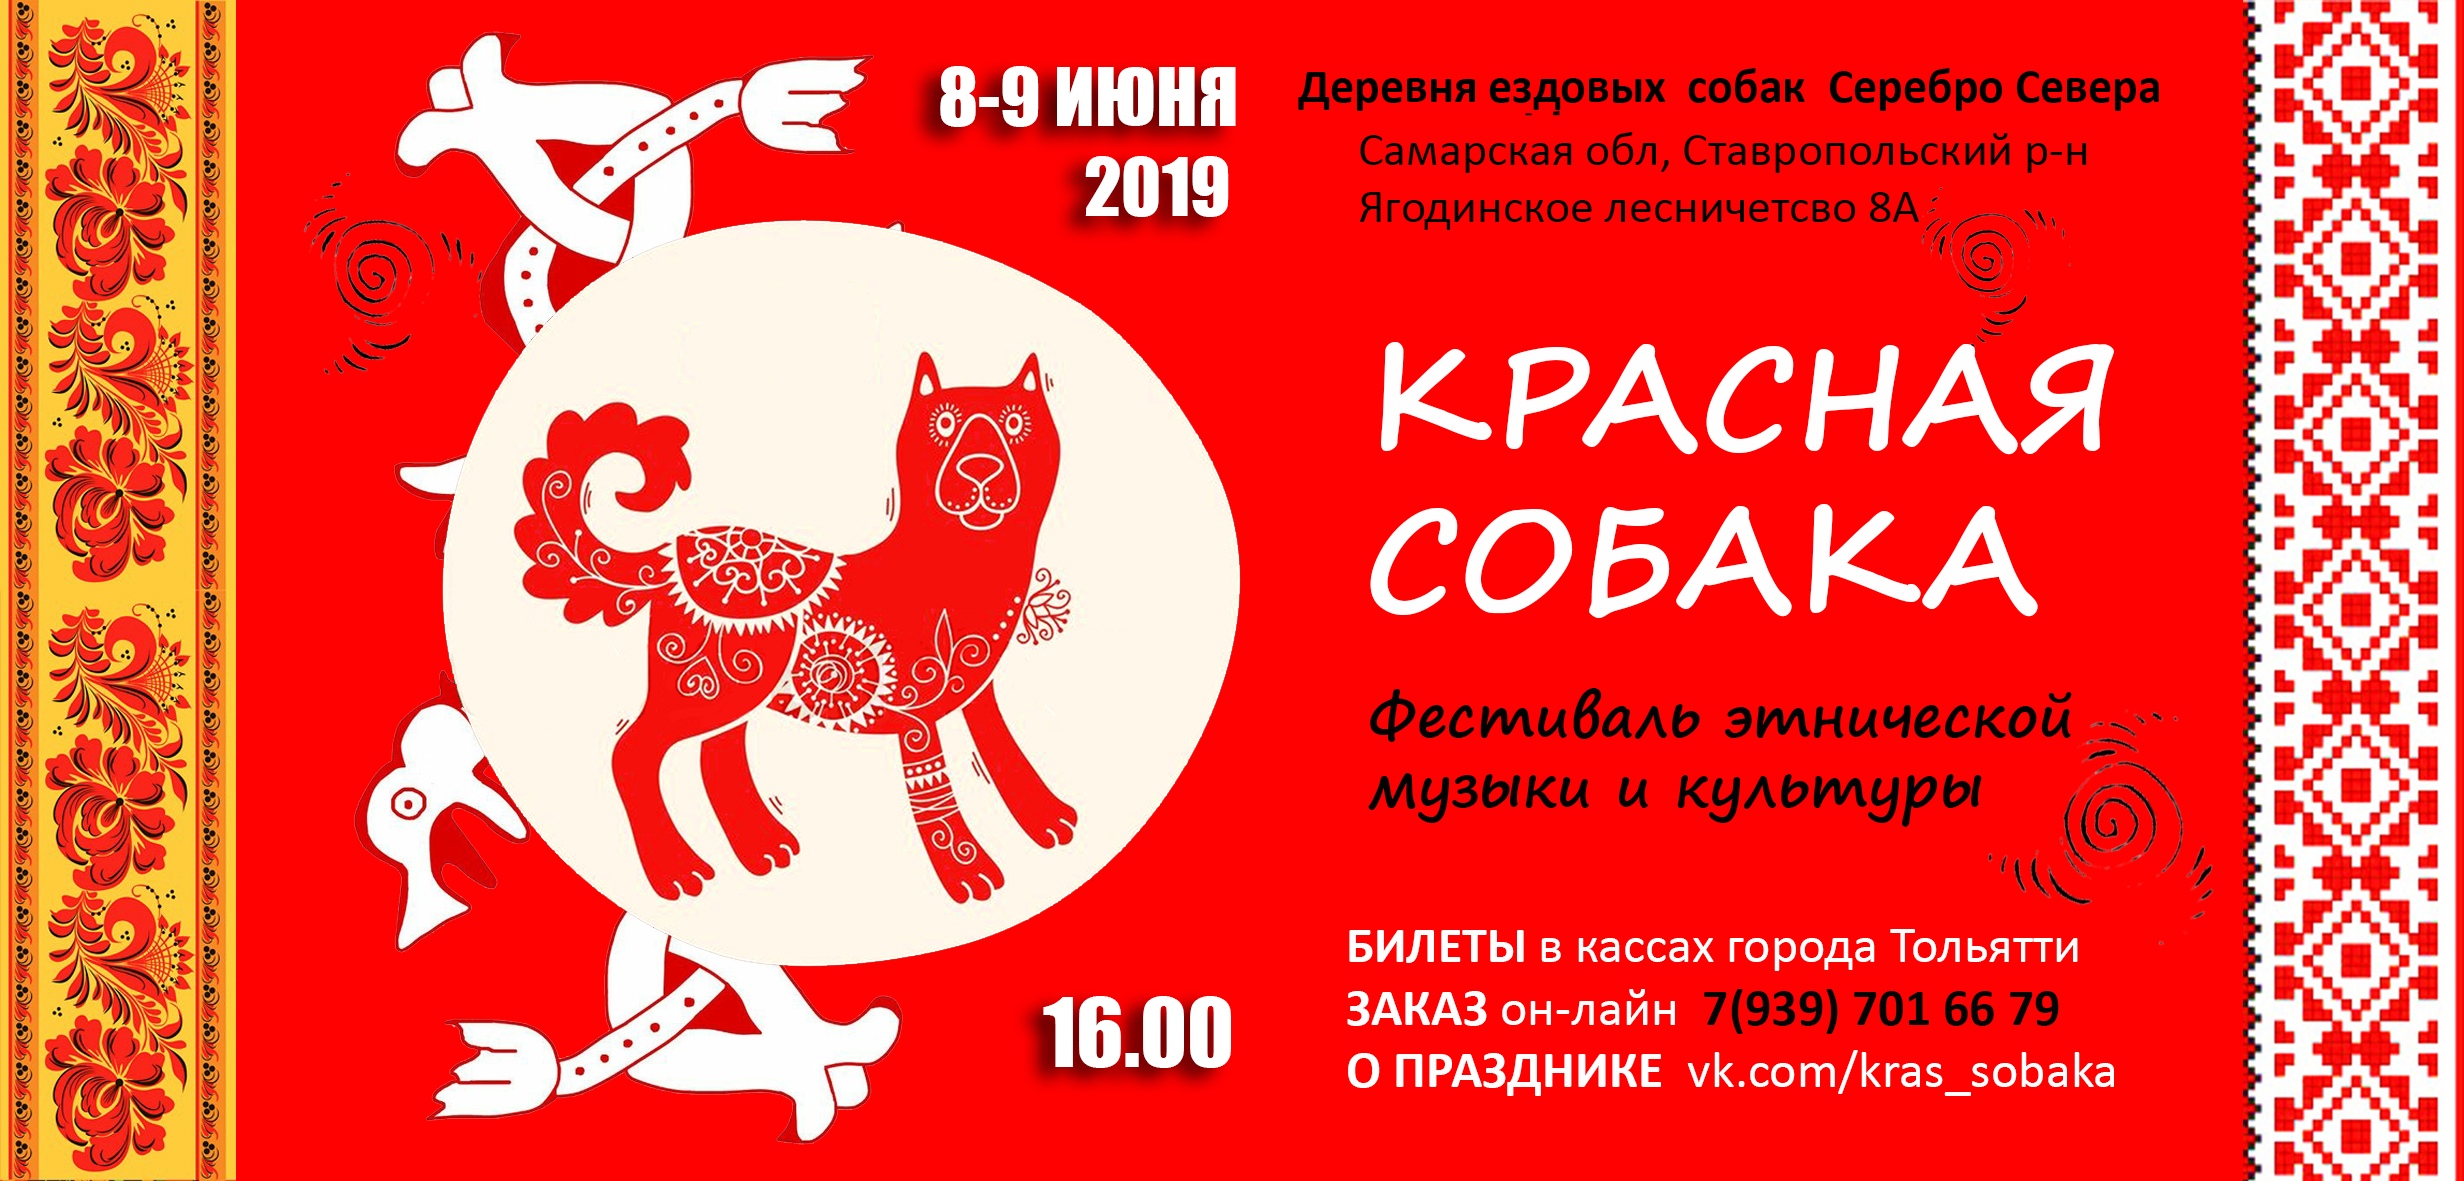 Фестиваль этнической музыки и культуры “Красная собака” в третий раз пройдёт в Тольятти